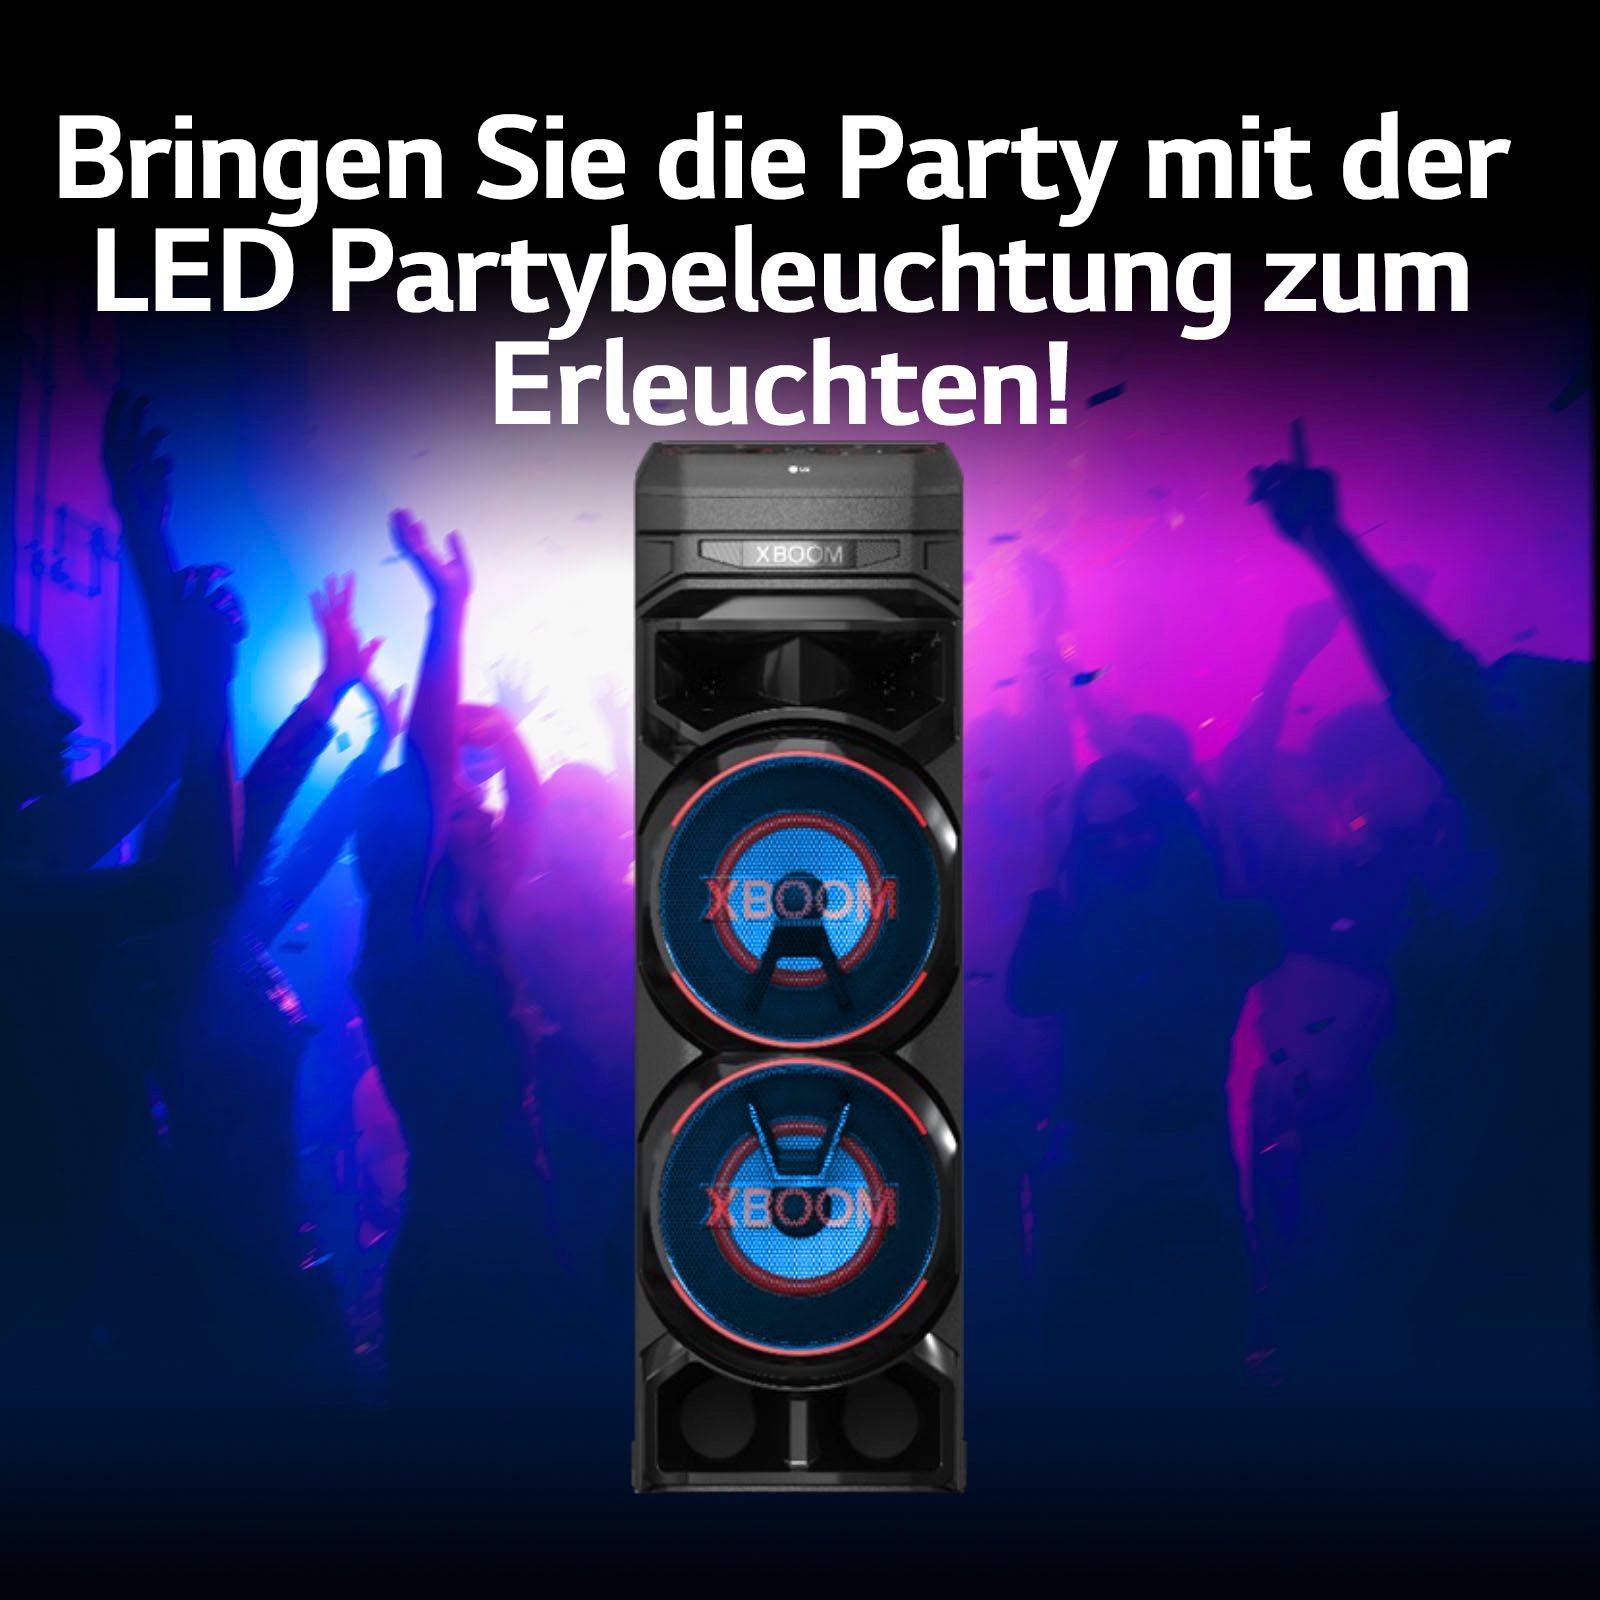 LG Party-Lautsprecher kaufen auf RNC9« Raten »XBOOM